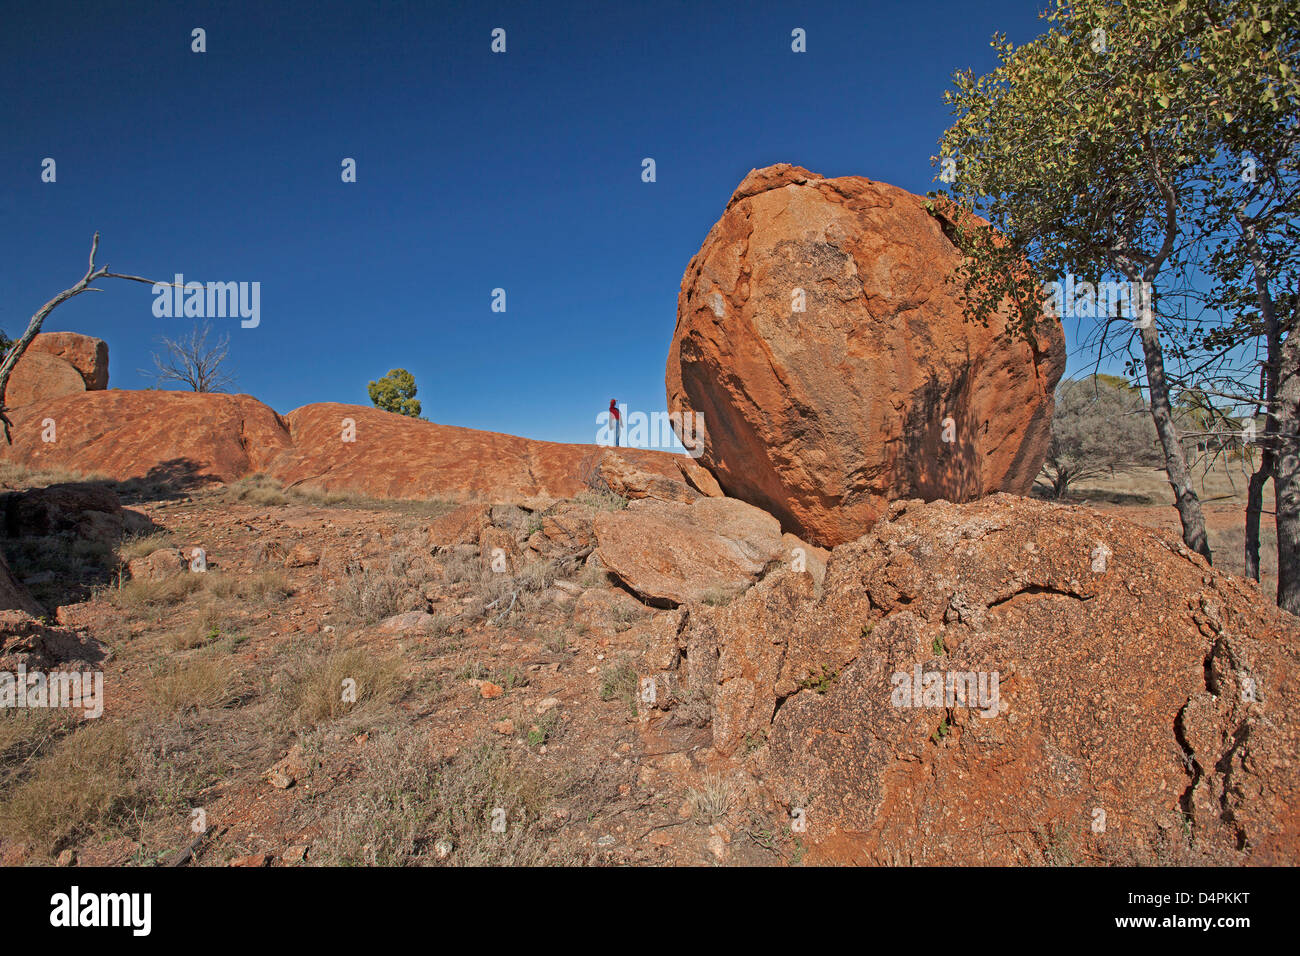 Los gigantescos bloques de granito y losas de roca - con el hombre una diminuta figura junto a ella - en el Parque Nacional Currawinya, Outback Australia Foto de stock